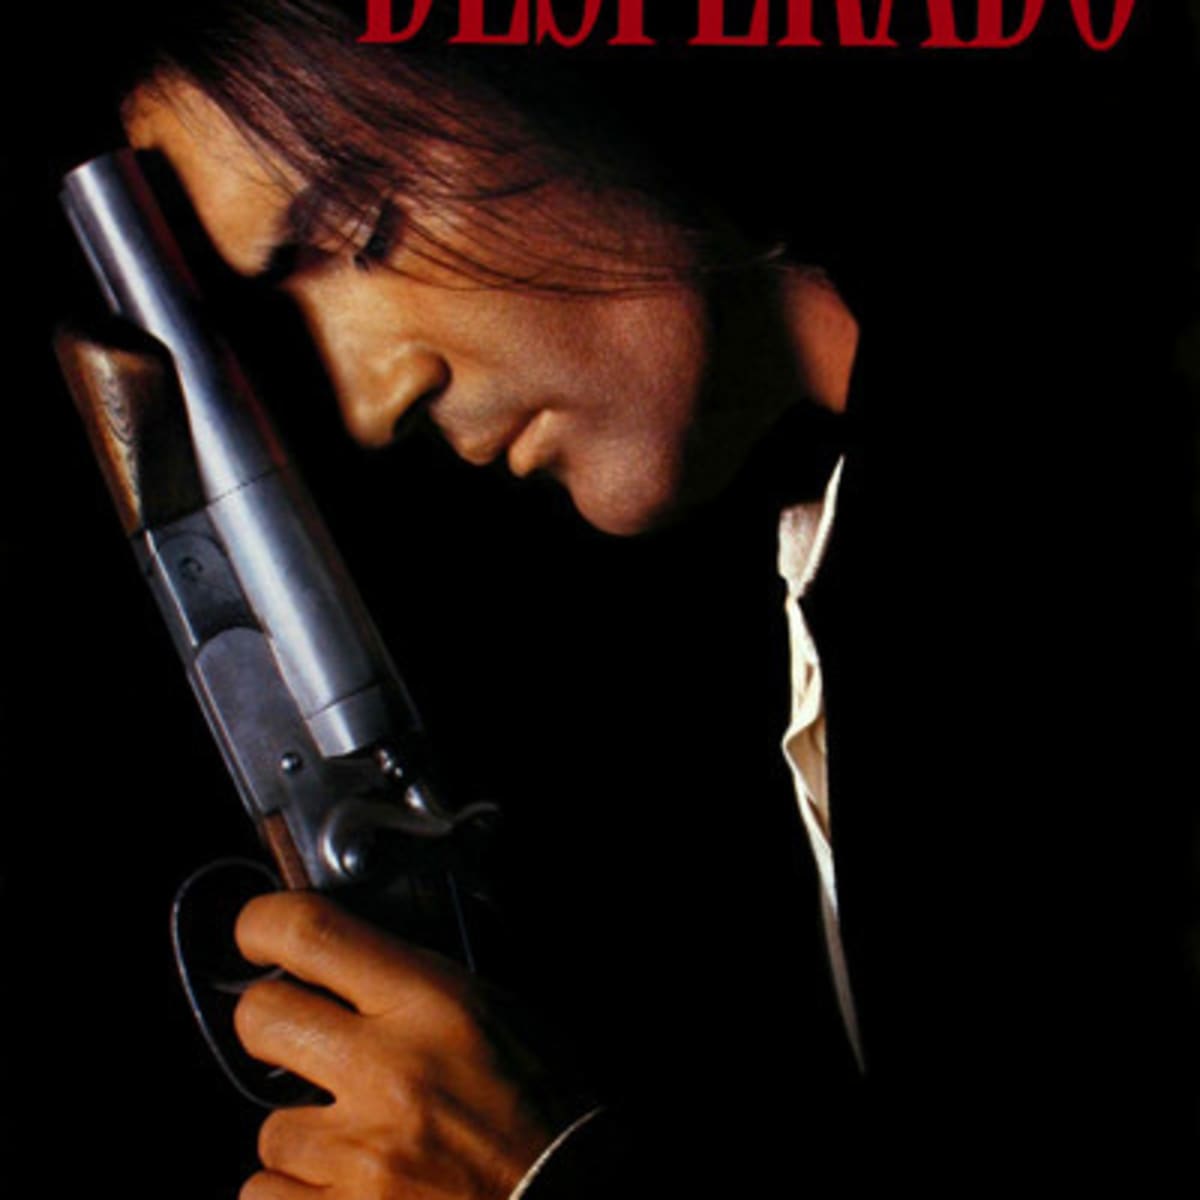 Why I'd like to be … Antonio Banderas in Desperado, Antonio Banderas